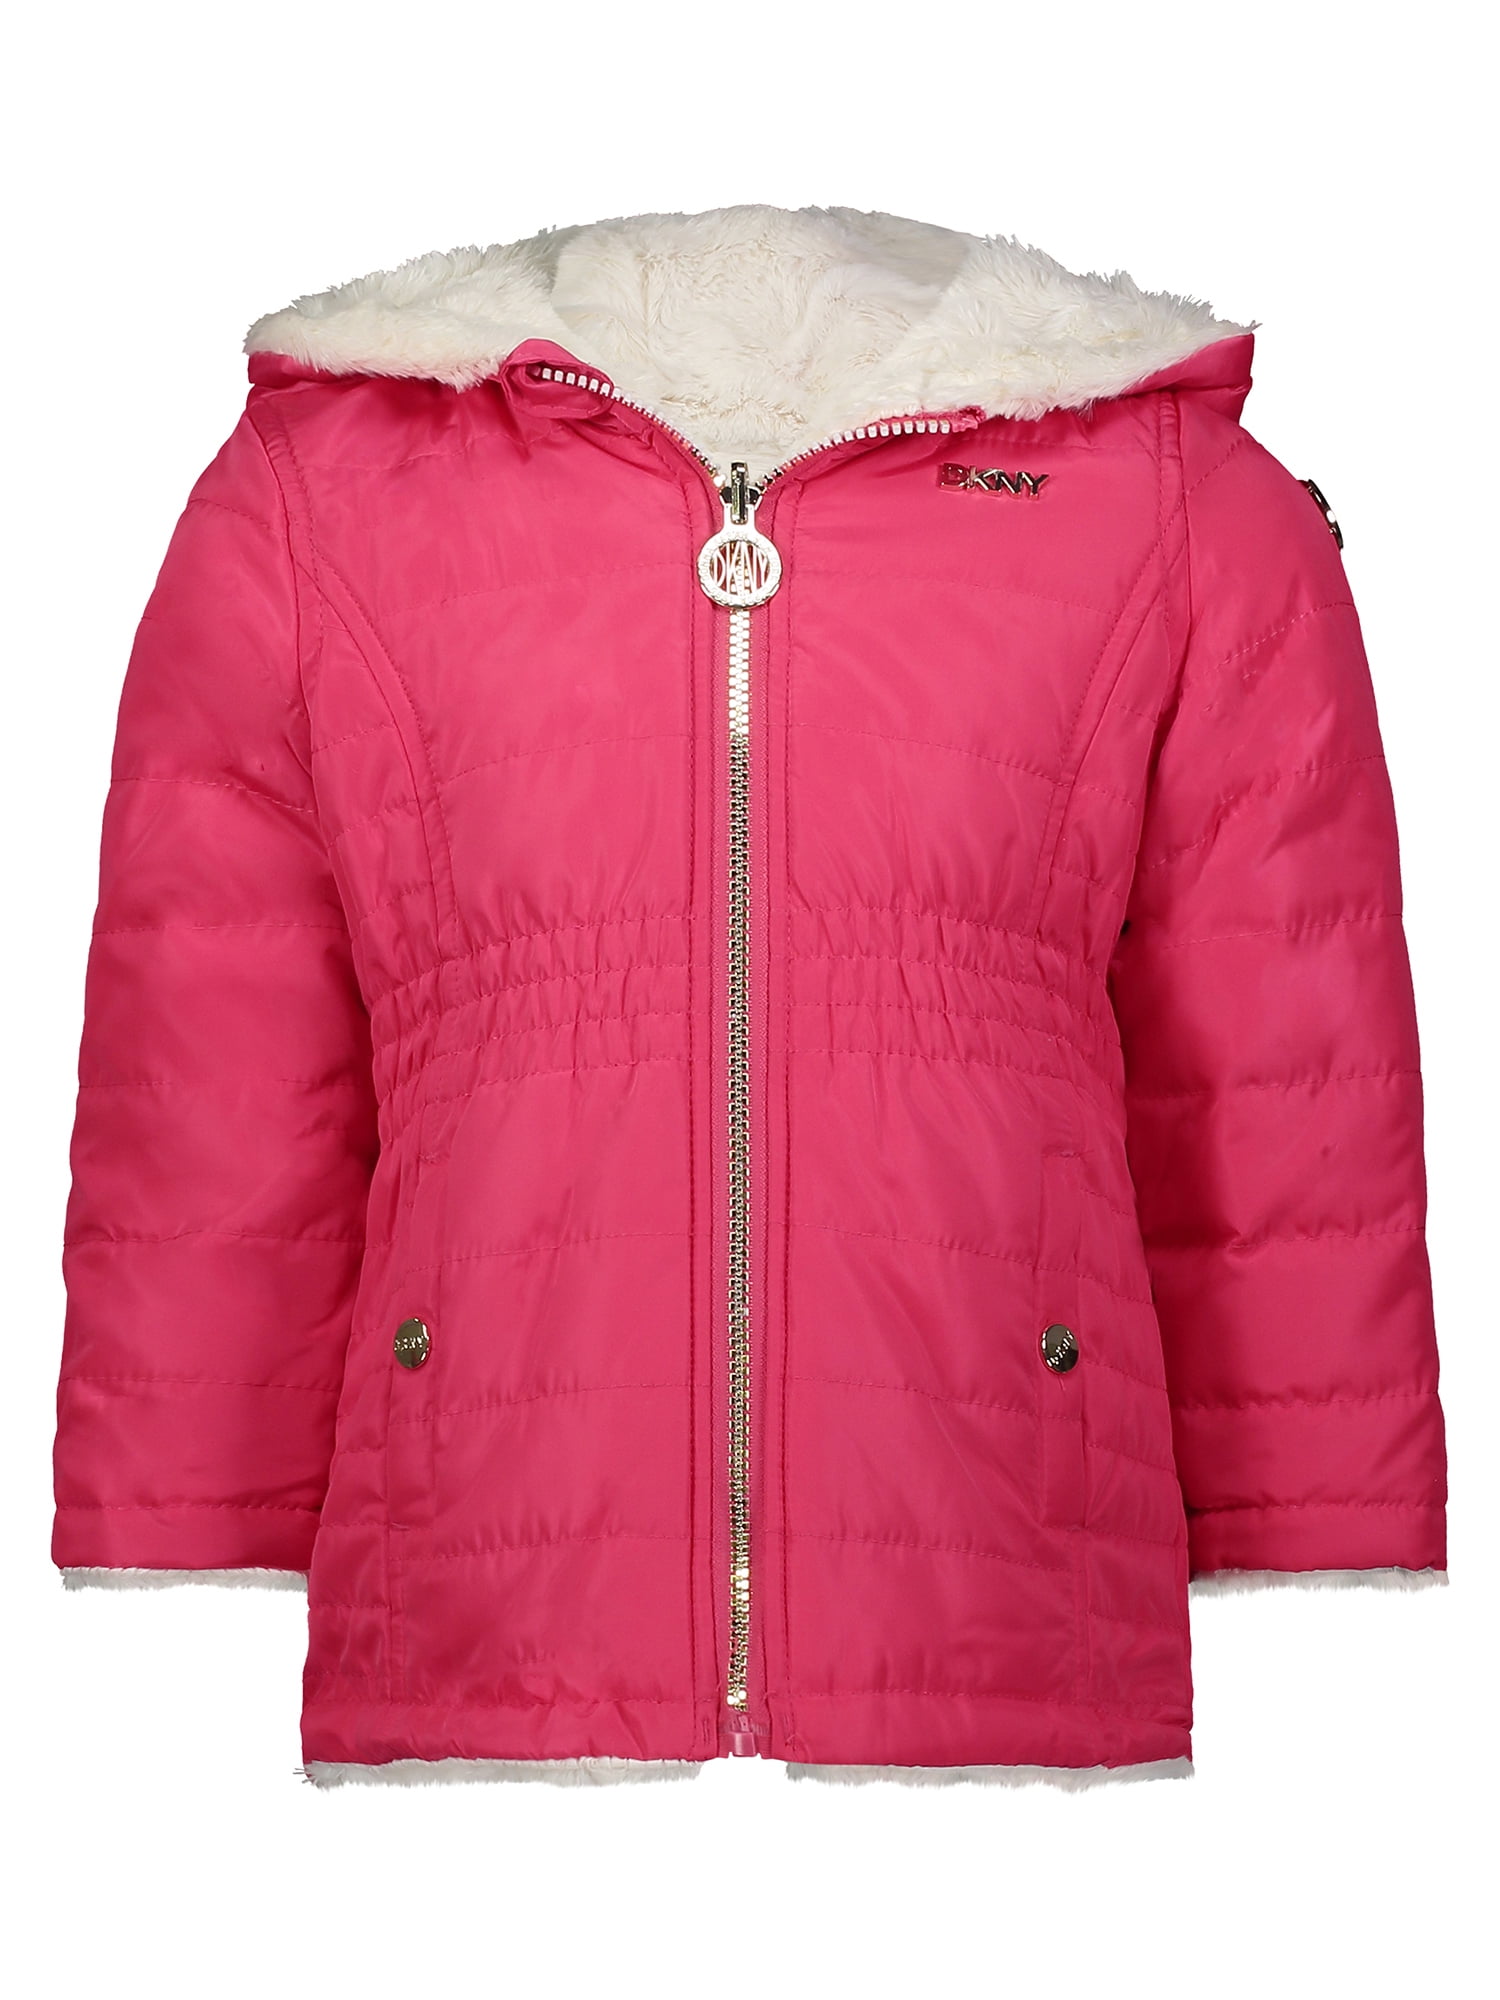 12M-4T DKNY Baby Girls’ Jacket Fleece Lined Quilted Bubble Puffer Windbreaker Coat 